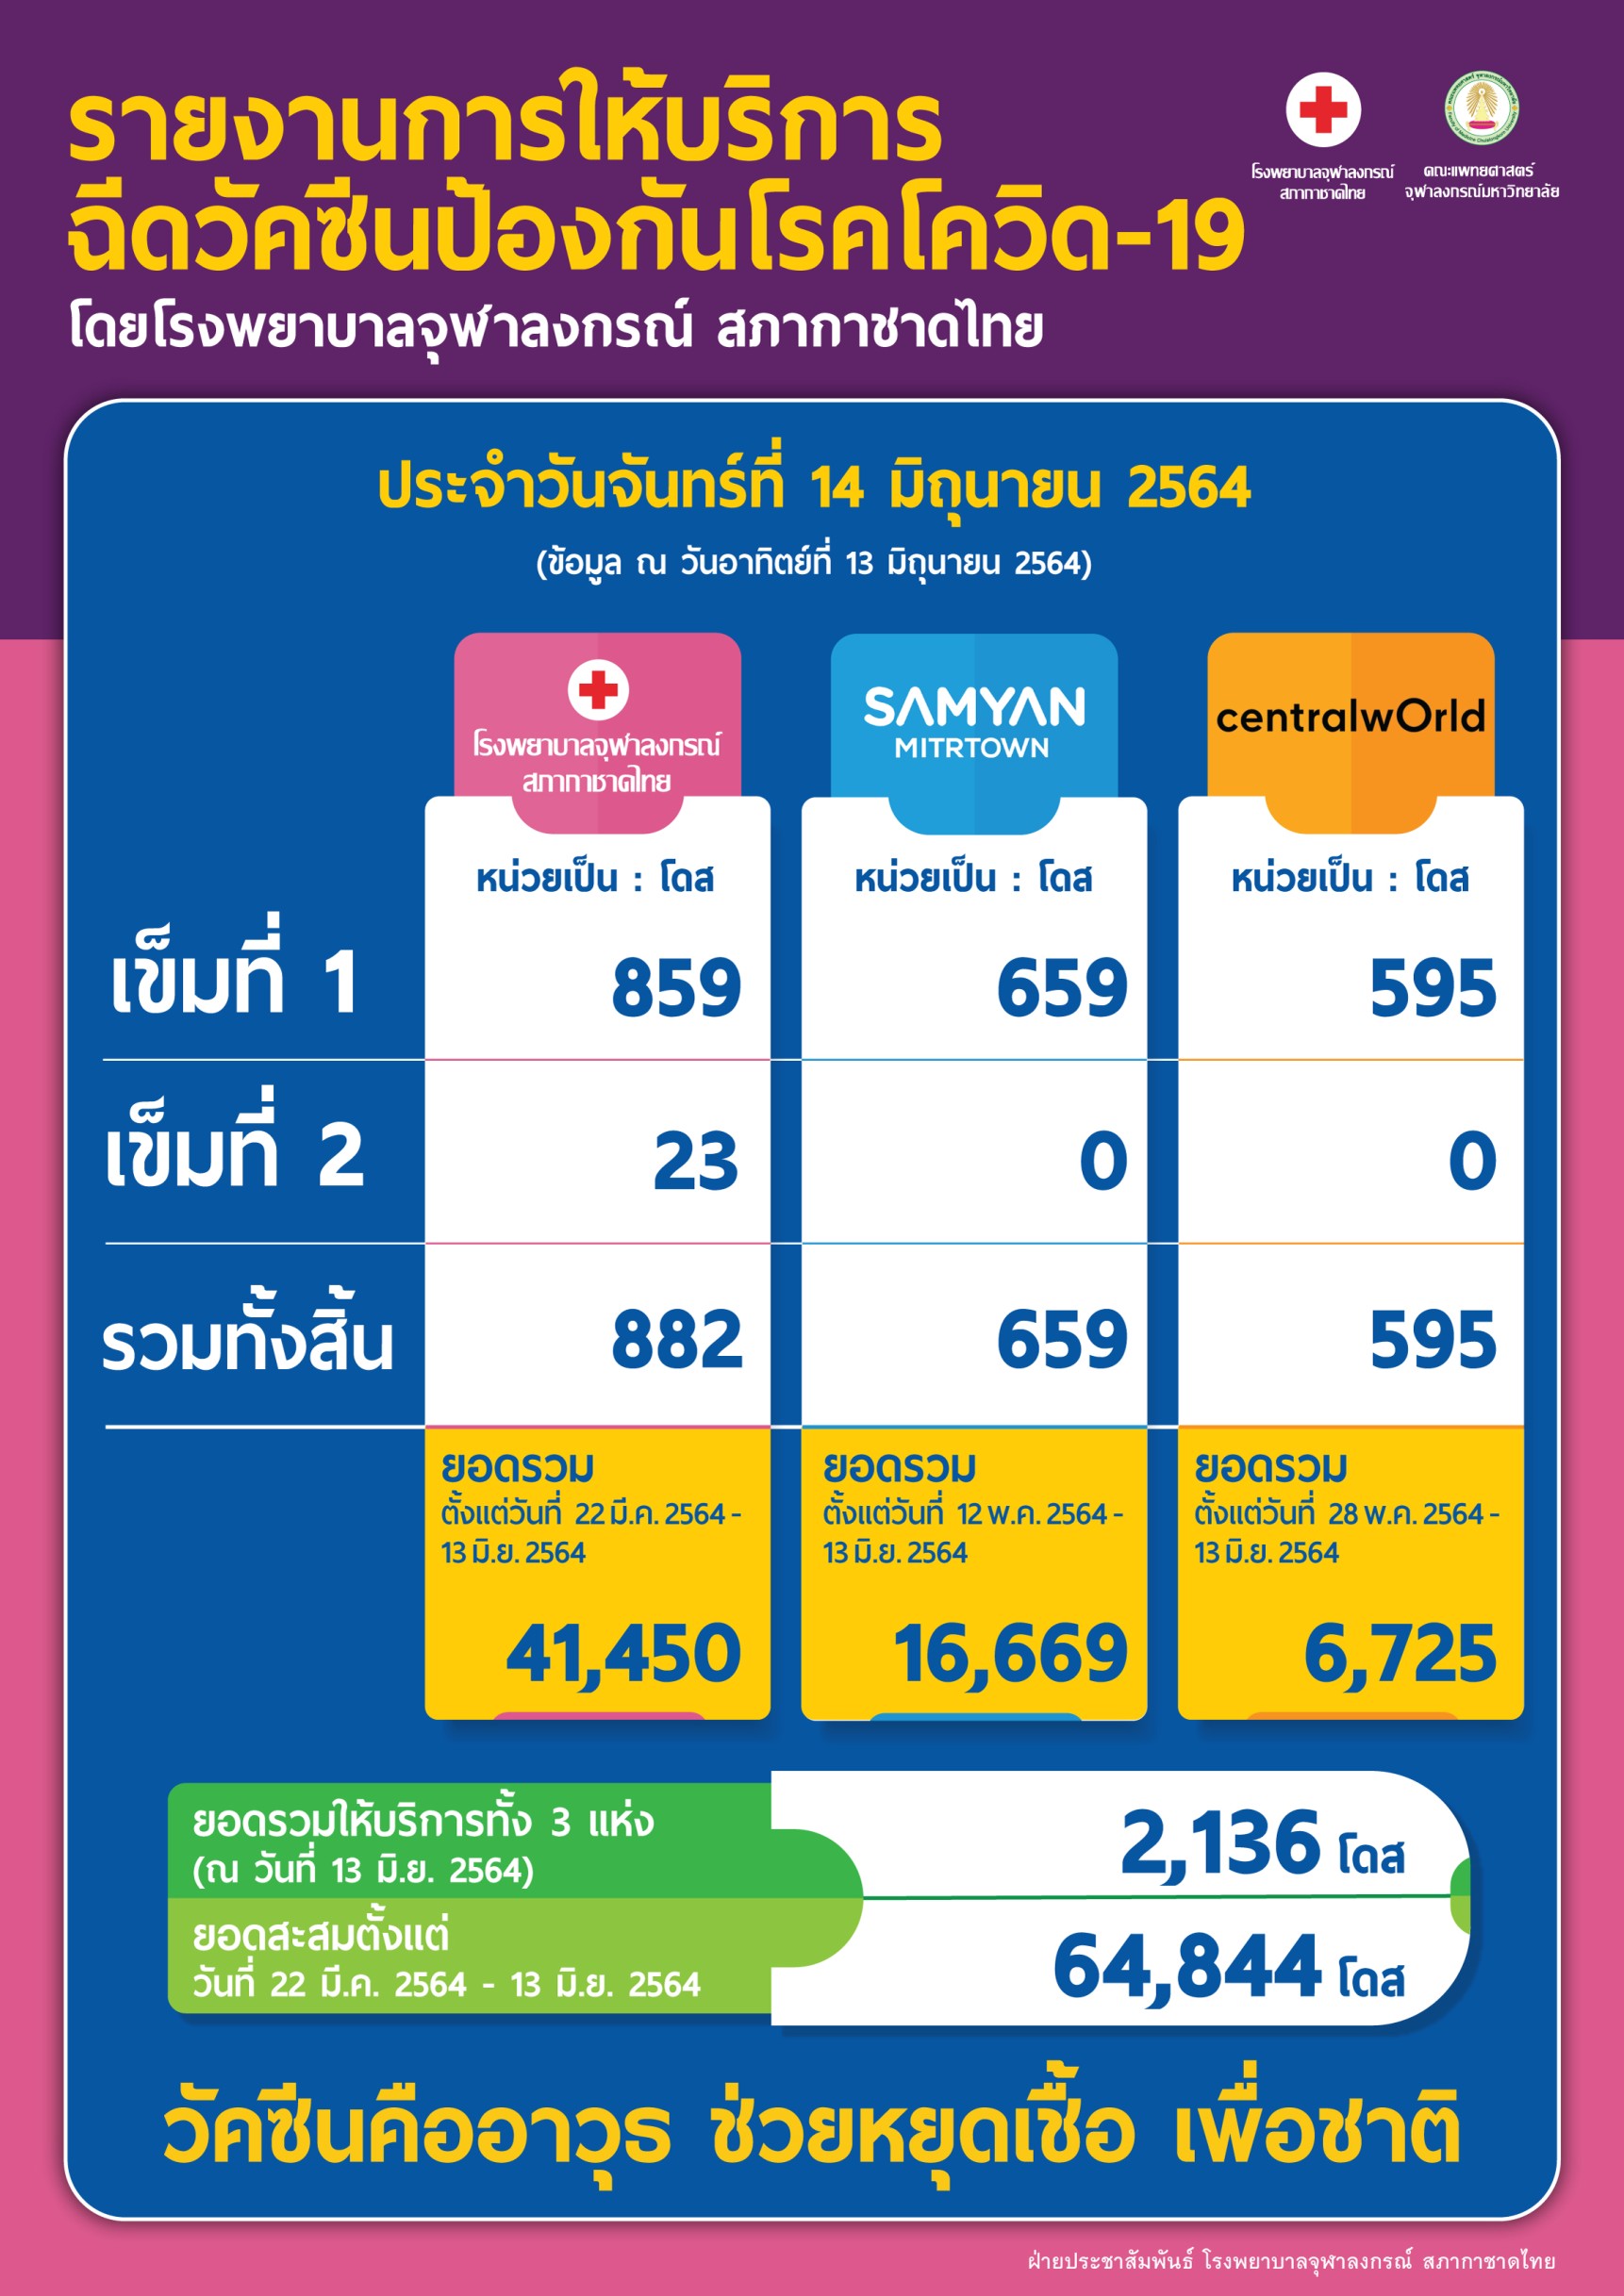 รายงานการให้บริการ ฉีดวัคซีนป้องกันโรคโควิด-19 โดยโรงพยาบาลจุฬาลงกรณ์ สภากาชาดไทย ประจำวันจันทร์ที่ 14 มิถุนายน 2564